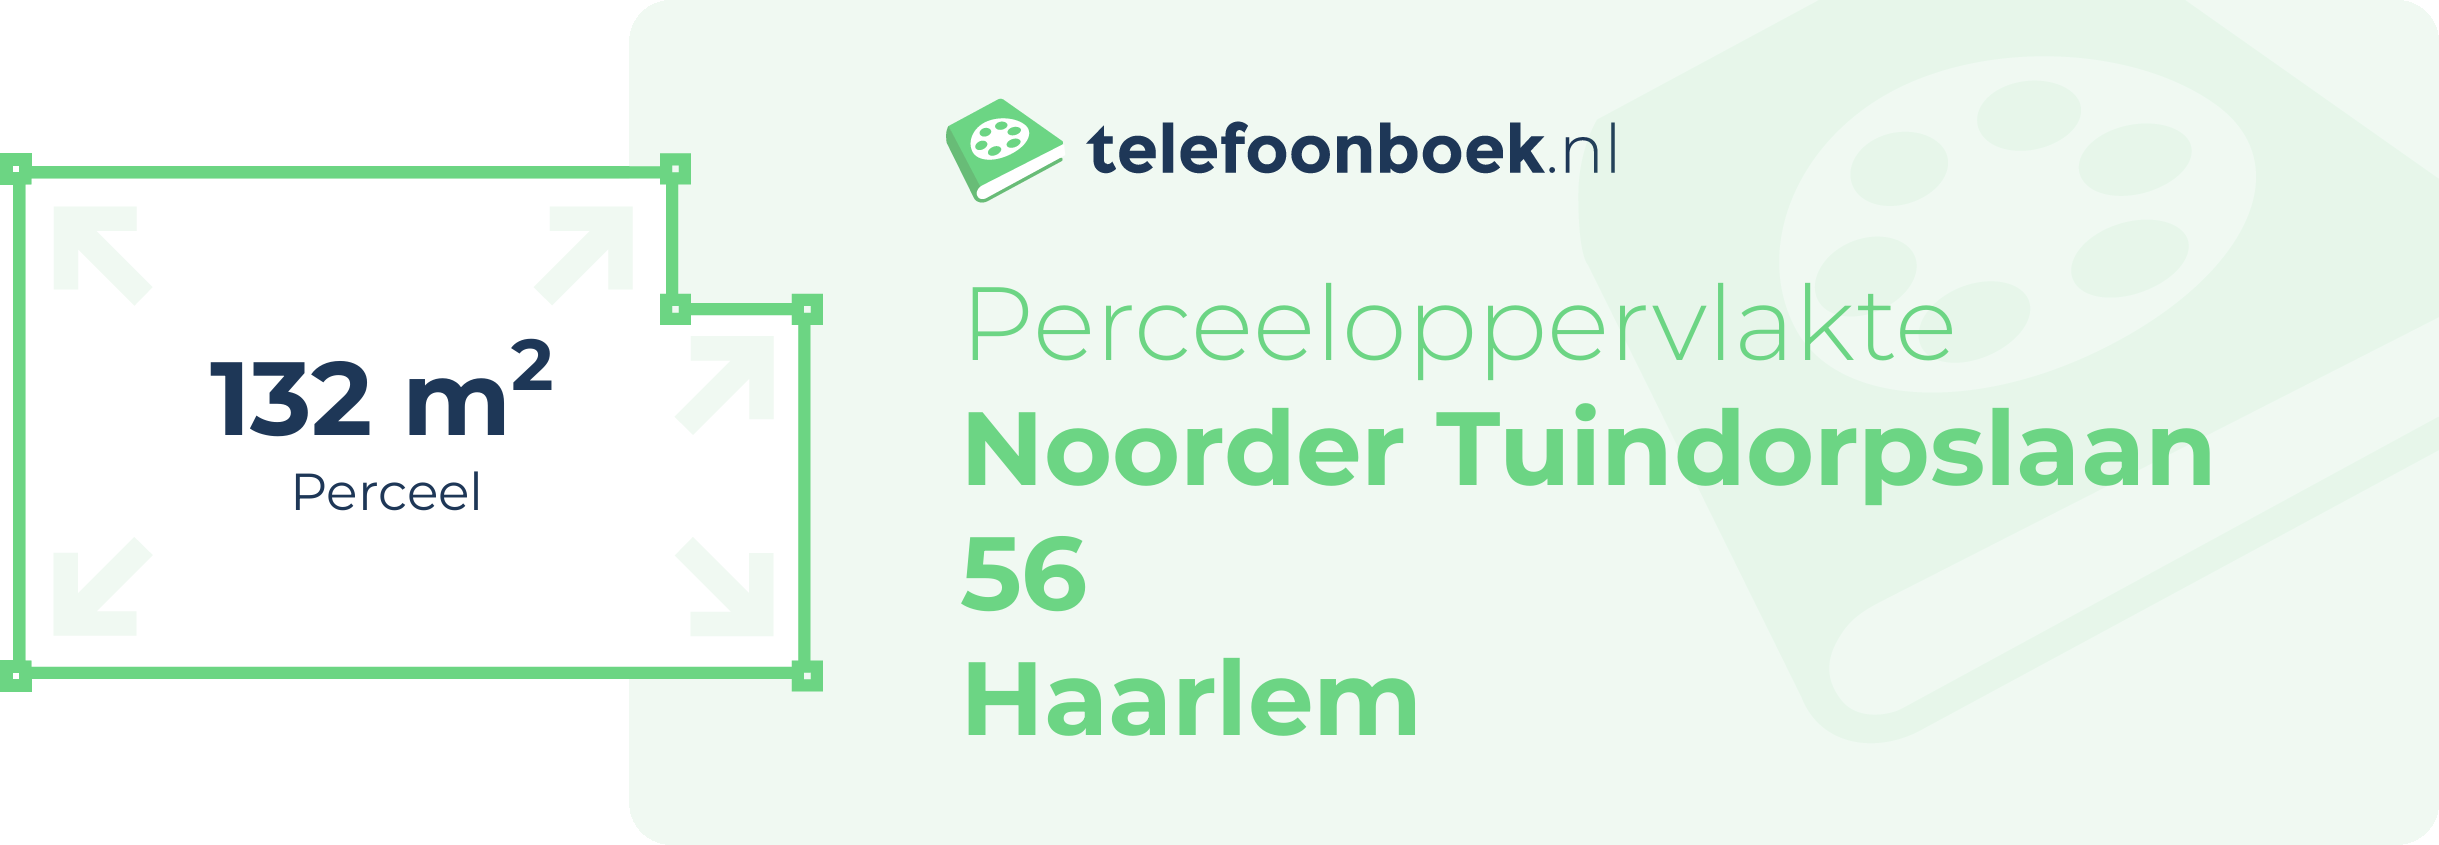 Perceeloppervlakte Noorder Tuindorpslaan 56 Haarlem